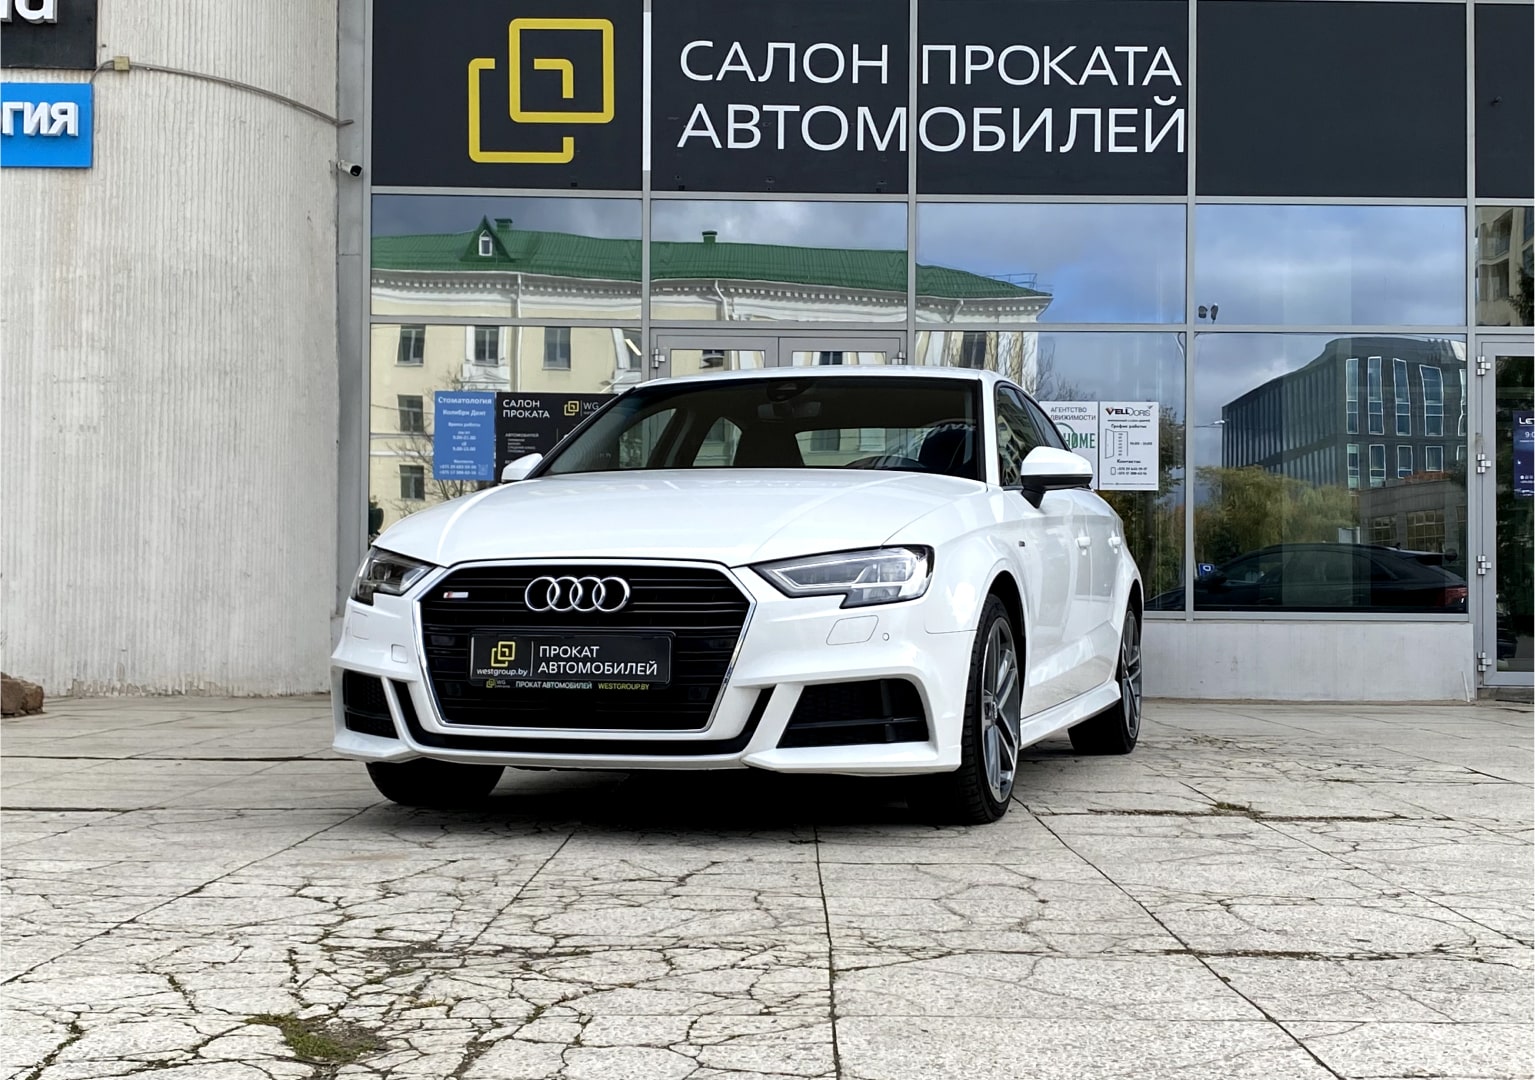 Аренда  Audi S3 35 Quattro Sport S Line  2 класса 2018-2022 года в городе Минск от 76 $/сутки,  двигатель: ДТ , объем 2.0 - 35 TDI литров, КАСКО (Мультидрайв), без водителя, вид 1 - West Group